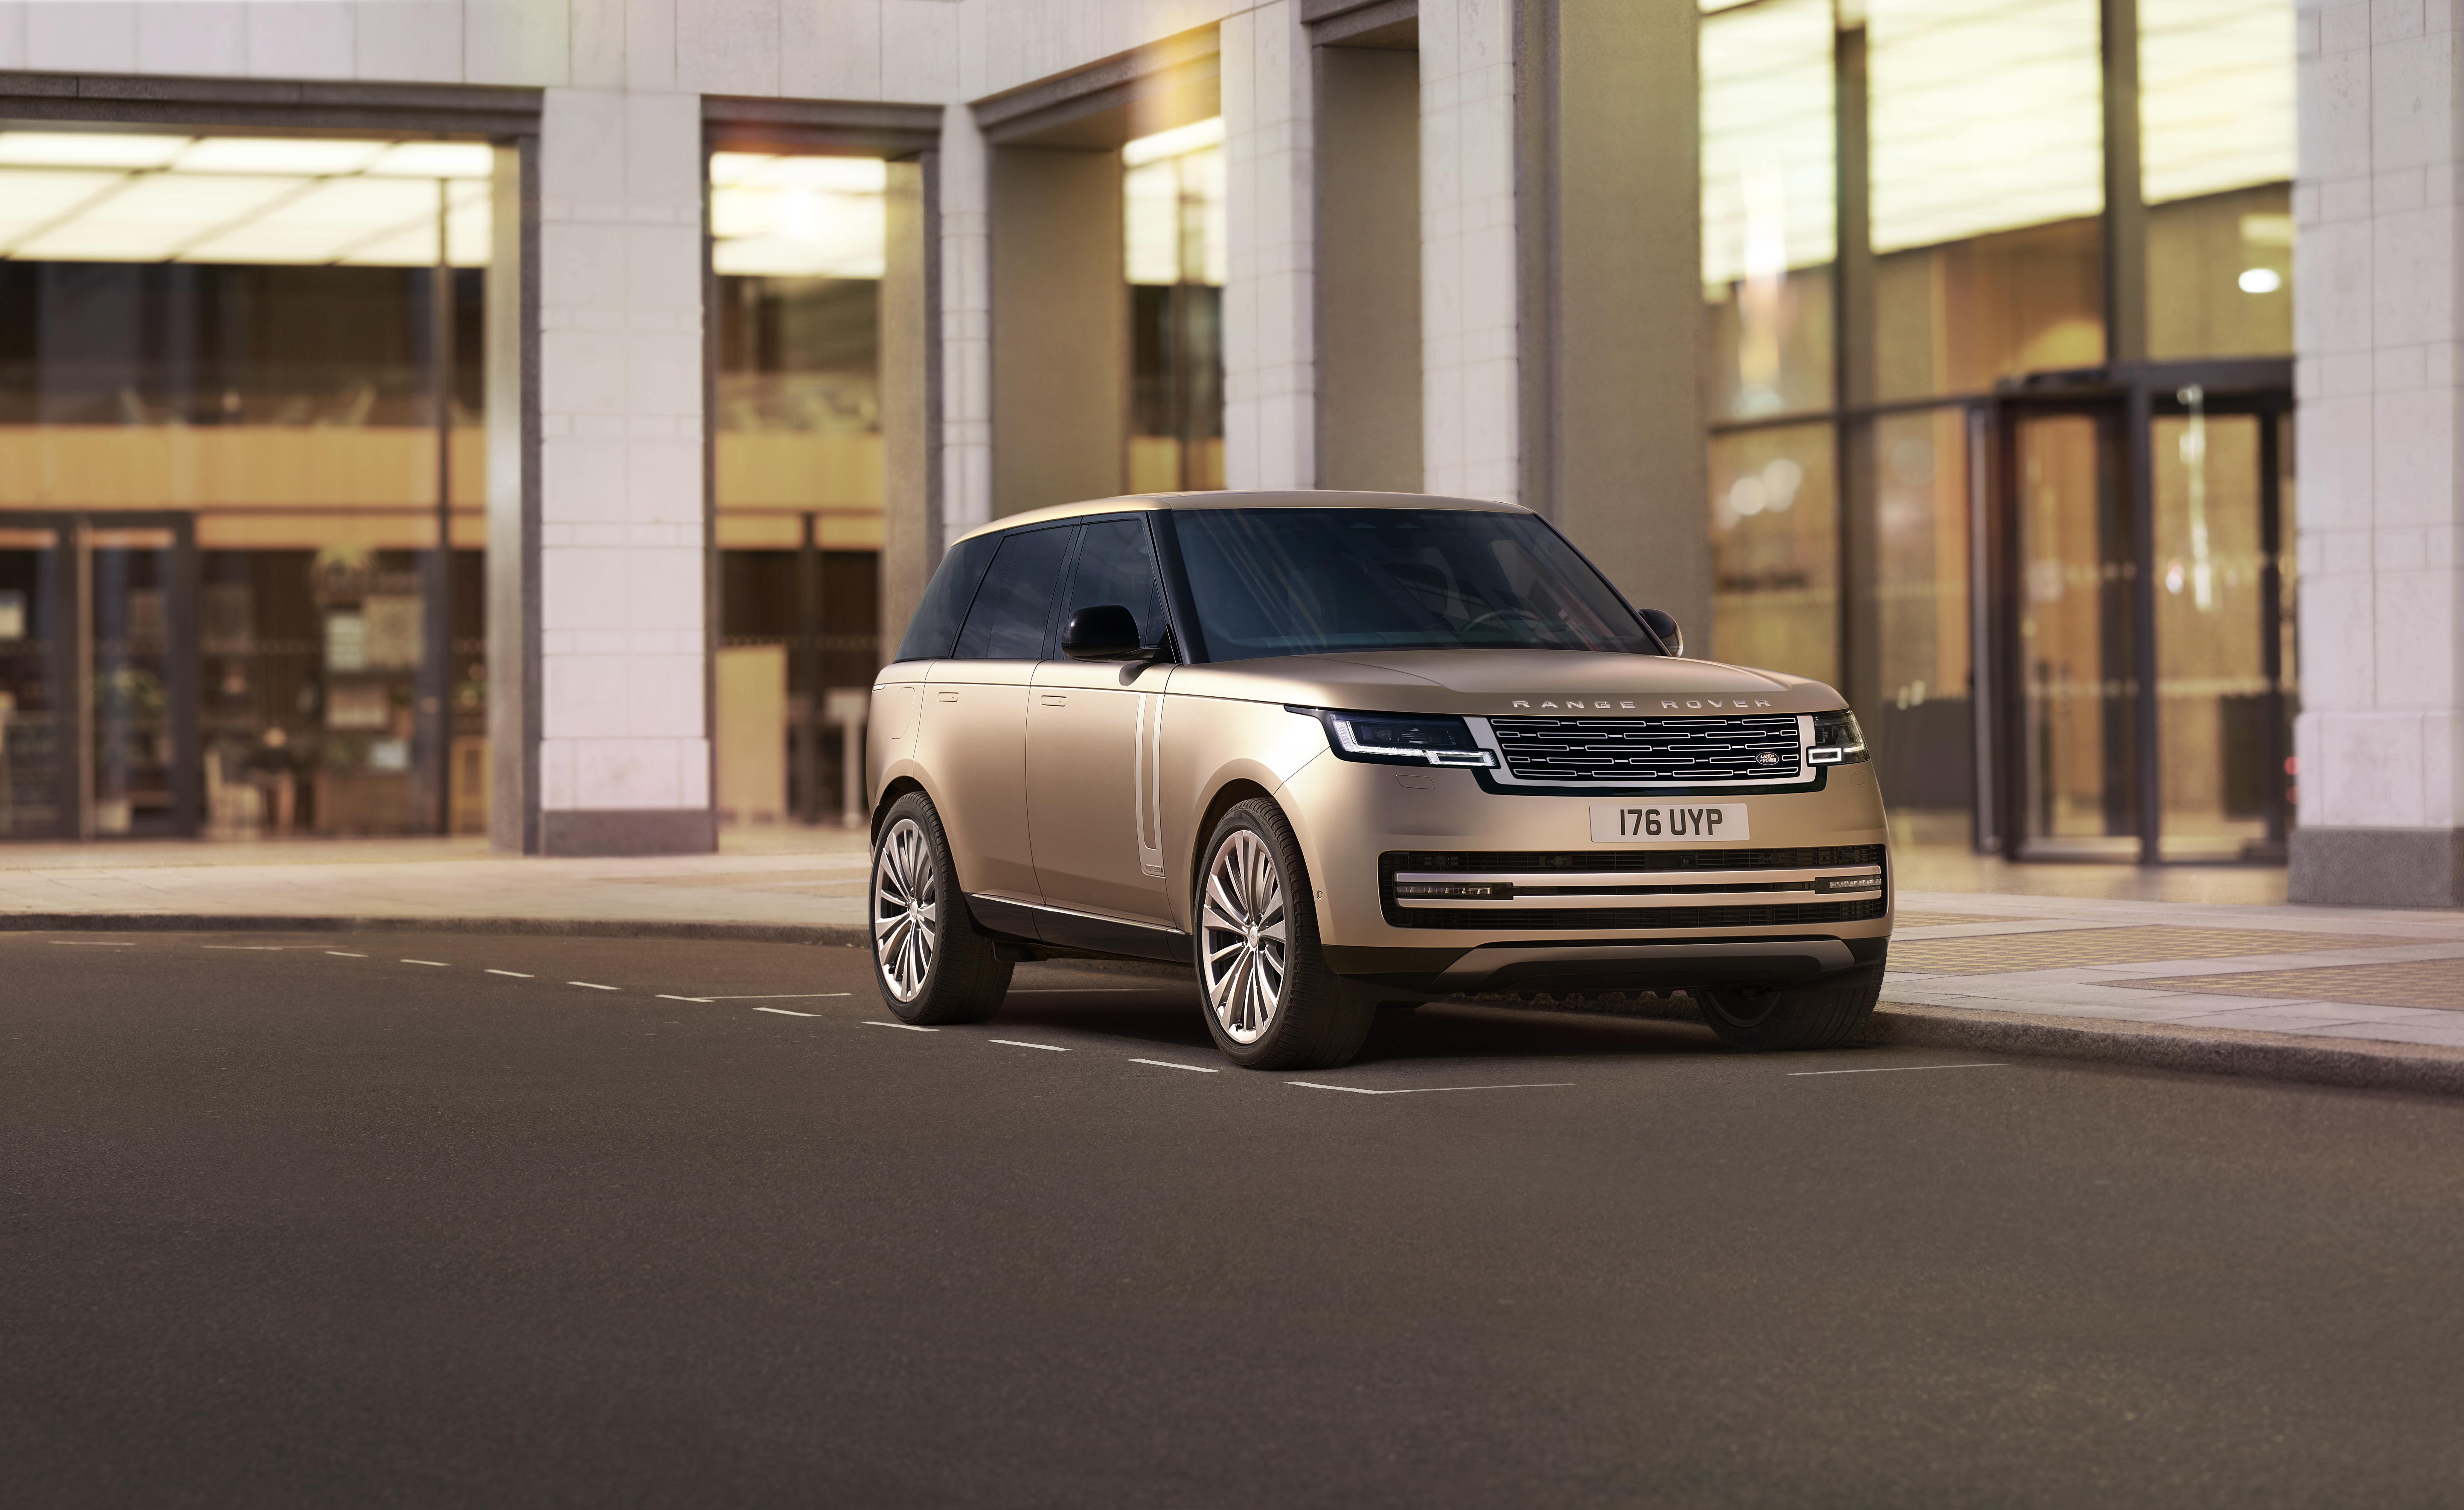 Range Rover 2022 sẽ mang lại cho bạn một trải nghiệm kiến trúc đầy cảm hứng và thú vị. Với một thiết kế đầy tính nghệ thuật và công nghệ cực kỳ tiên tiến, chiếc xe này sẽ cho bạn cảm giác đẳng cấp và hiện đại. Hãy đến và trải nghiệm chiếc xe sang trọng này! 